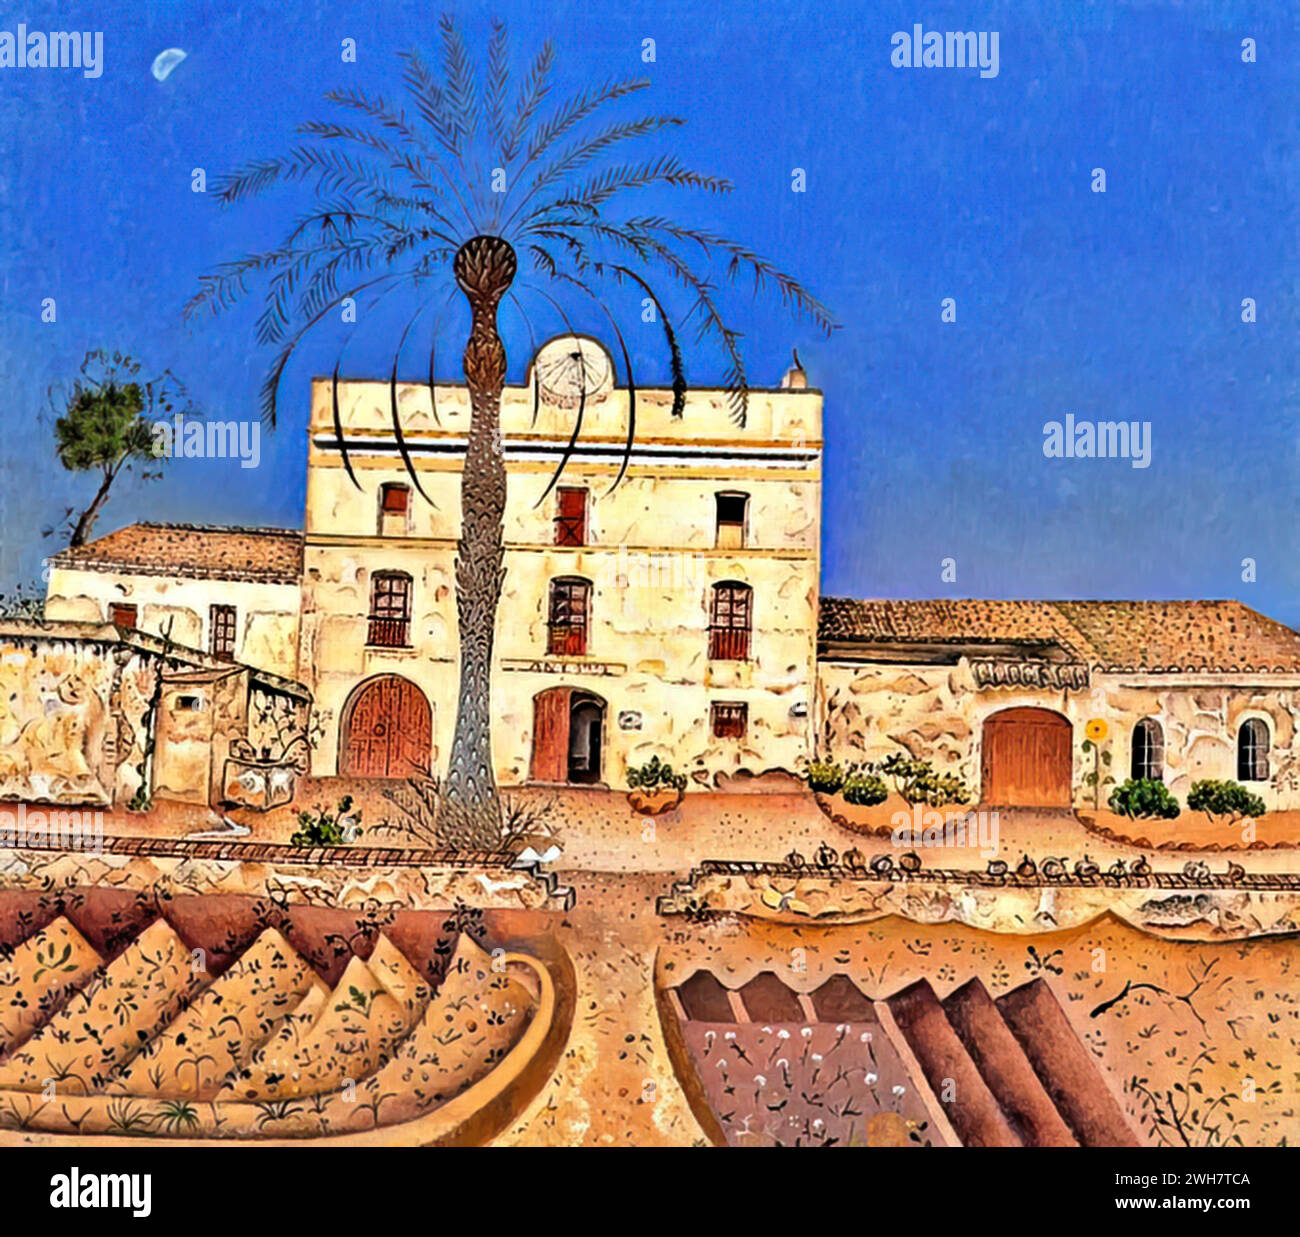 Maison avec palmier, 1918 (huile sur toile) de l'artiste Miro, Joan (1893-1983) Espagnol. Illustration de Vecteur